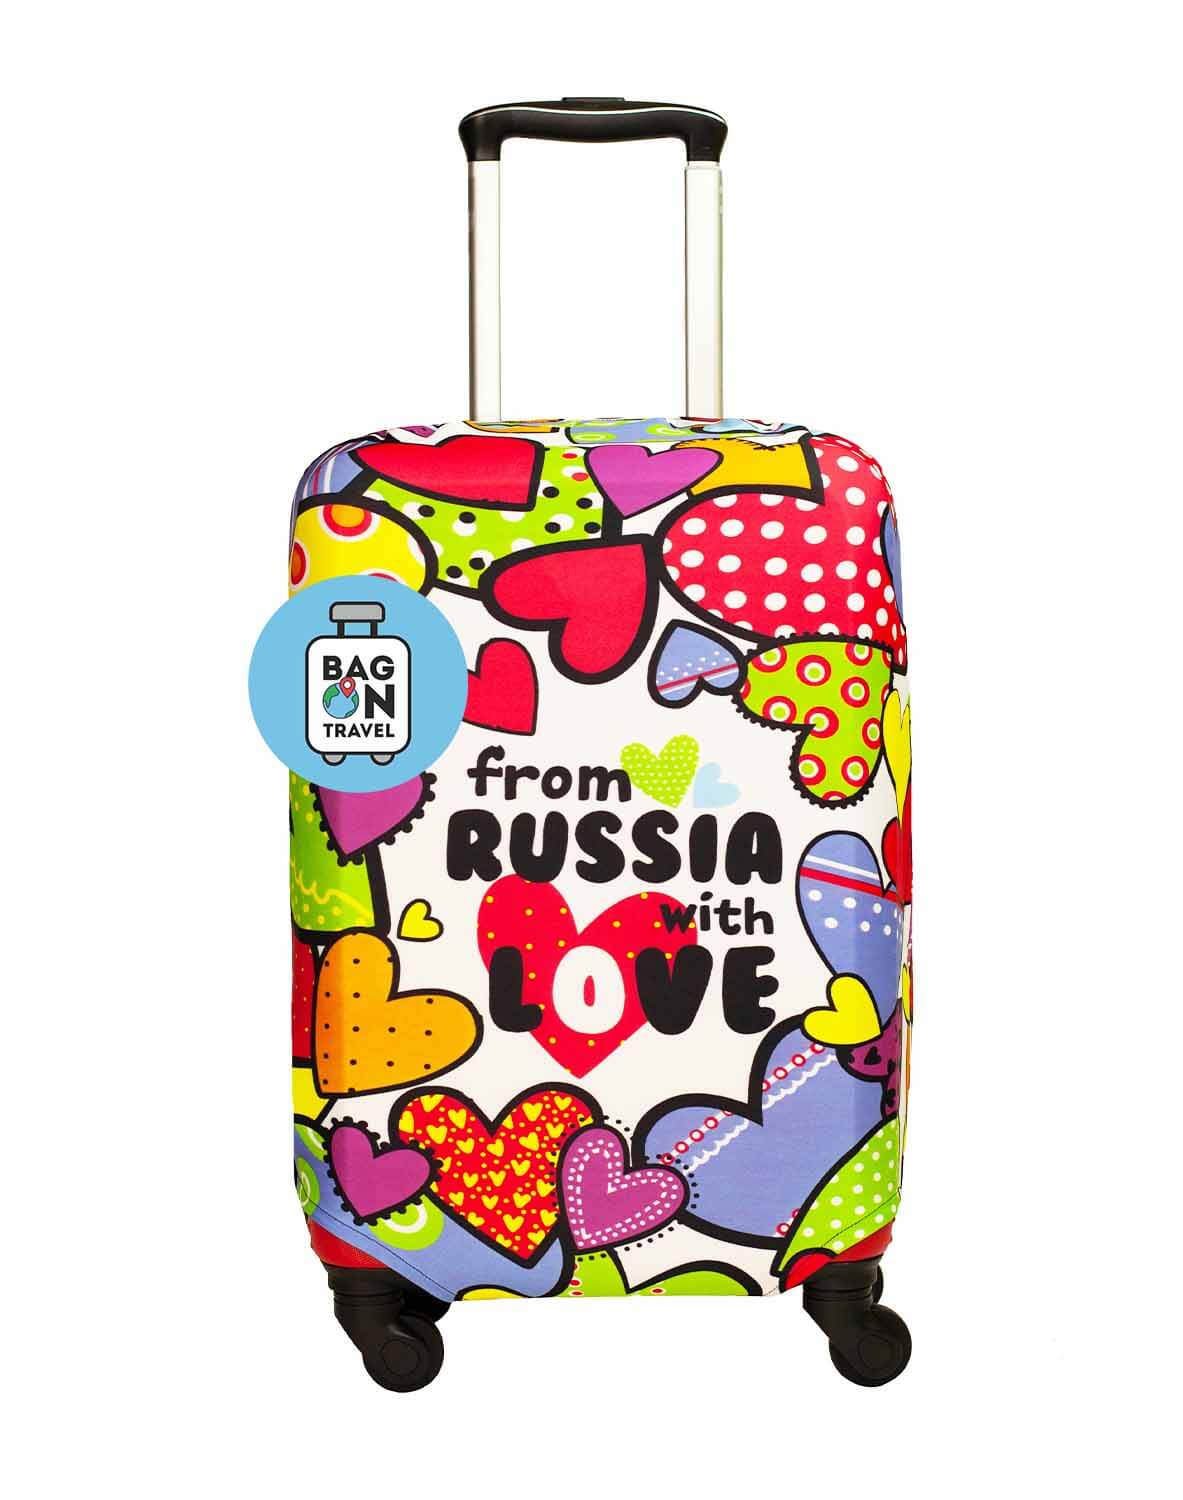 Чехол для чемодана S/S+ из России с любовью